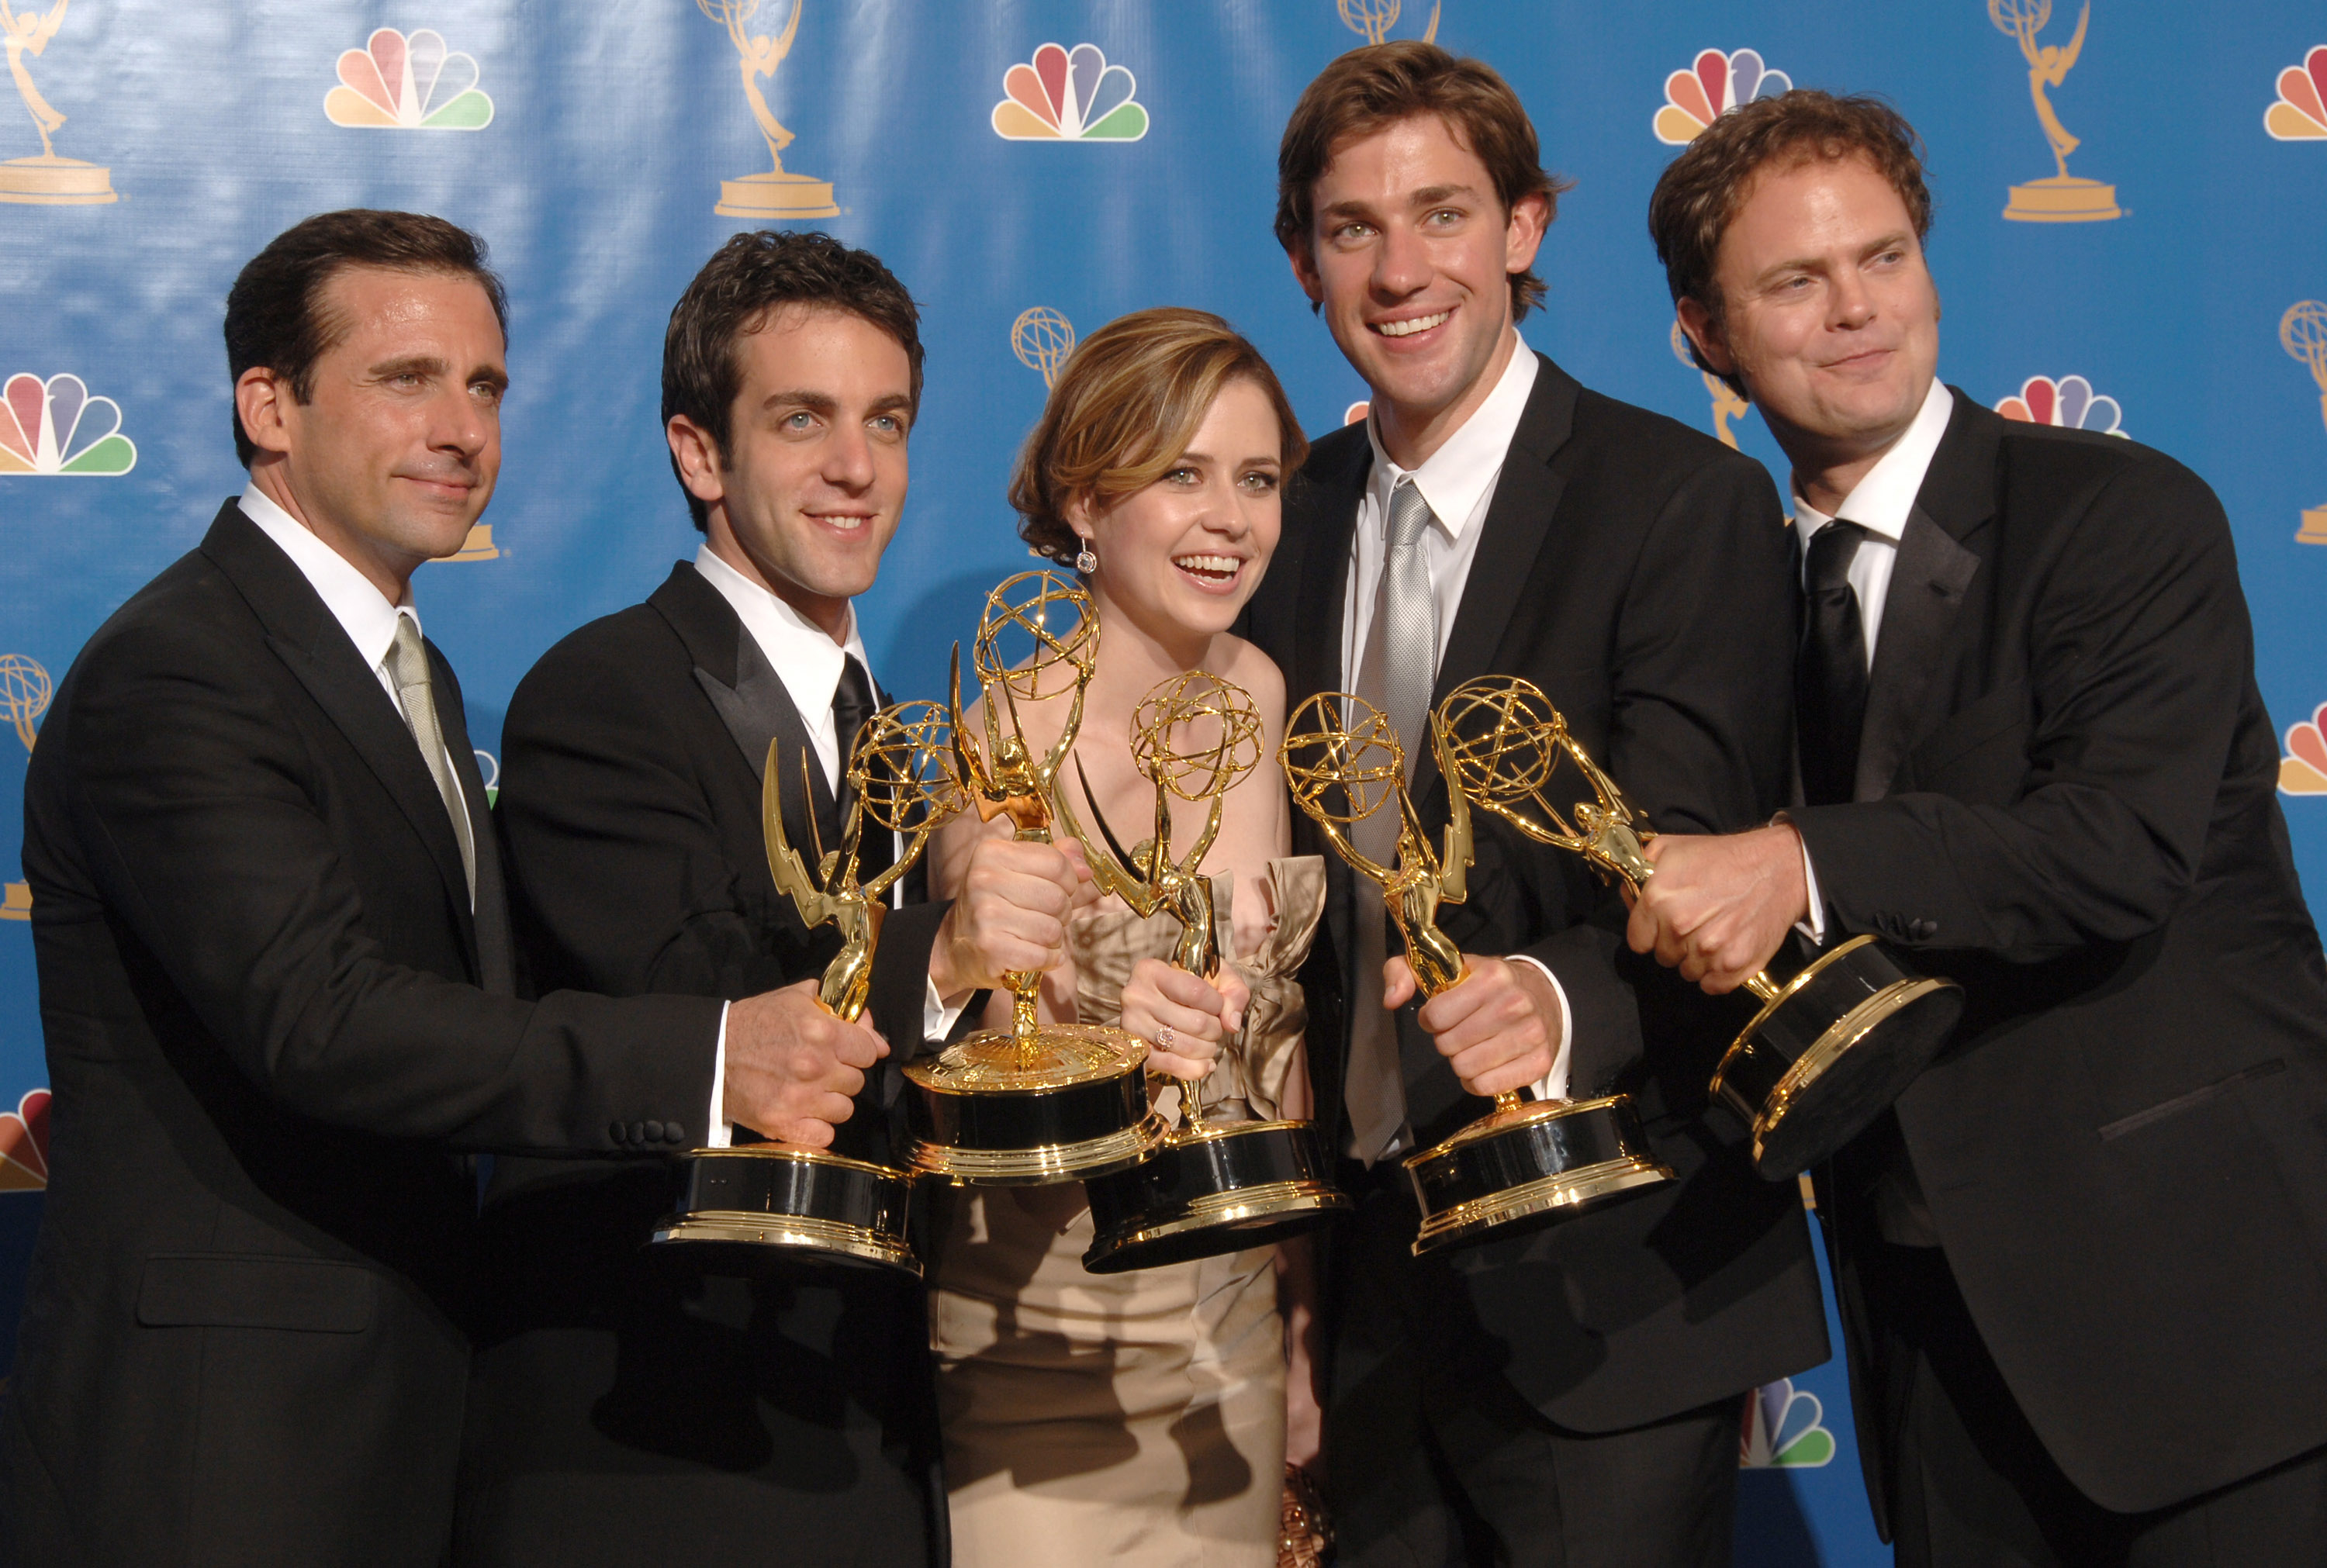 The Office cast members Steve, John, Rainn,  Jenna Fischer, and BJ Novak holding Emmys